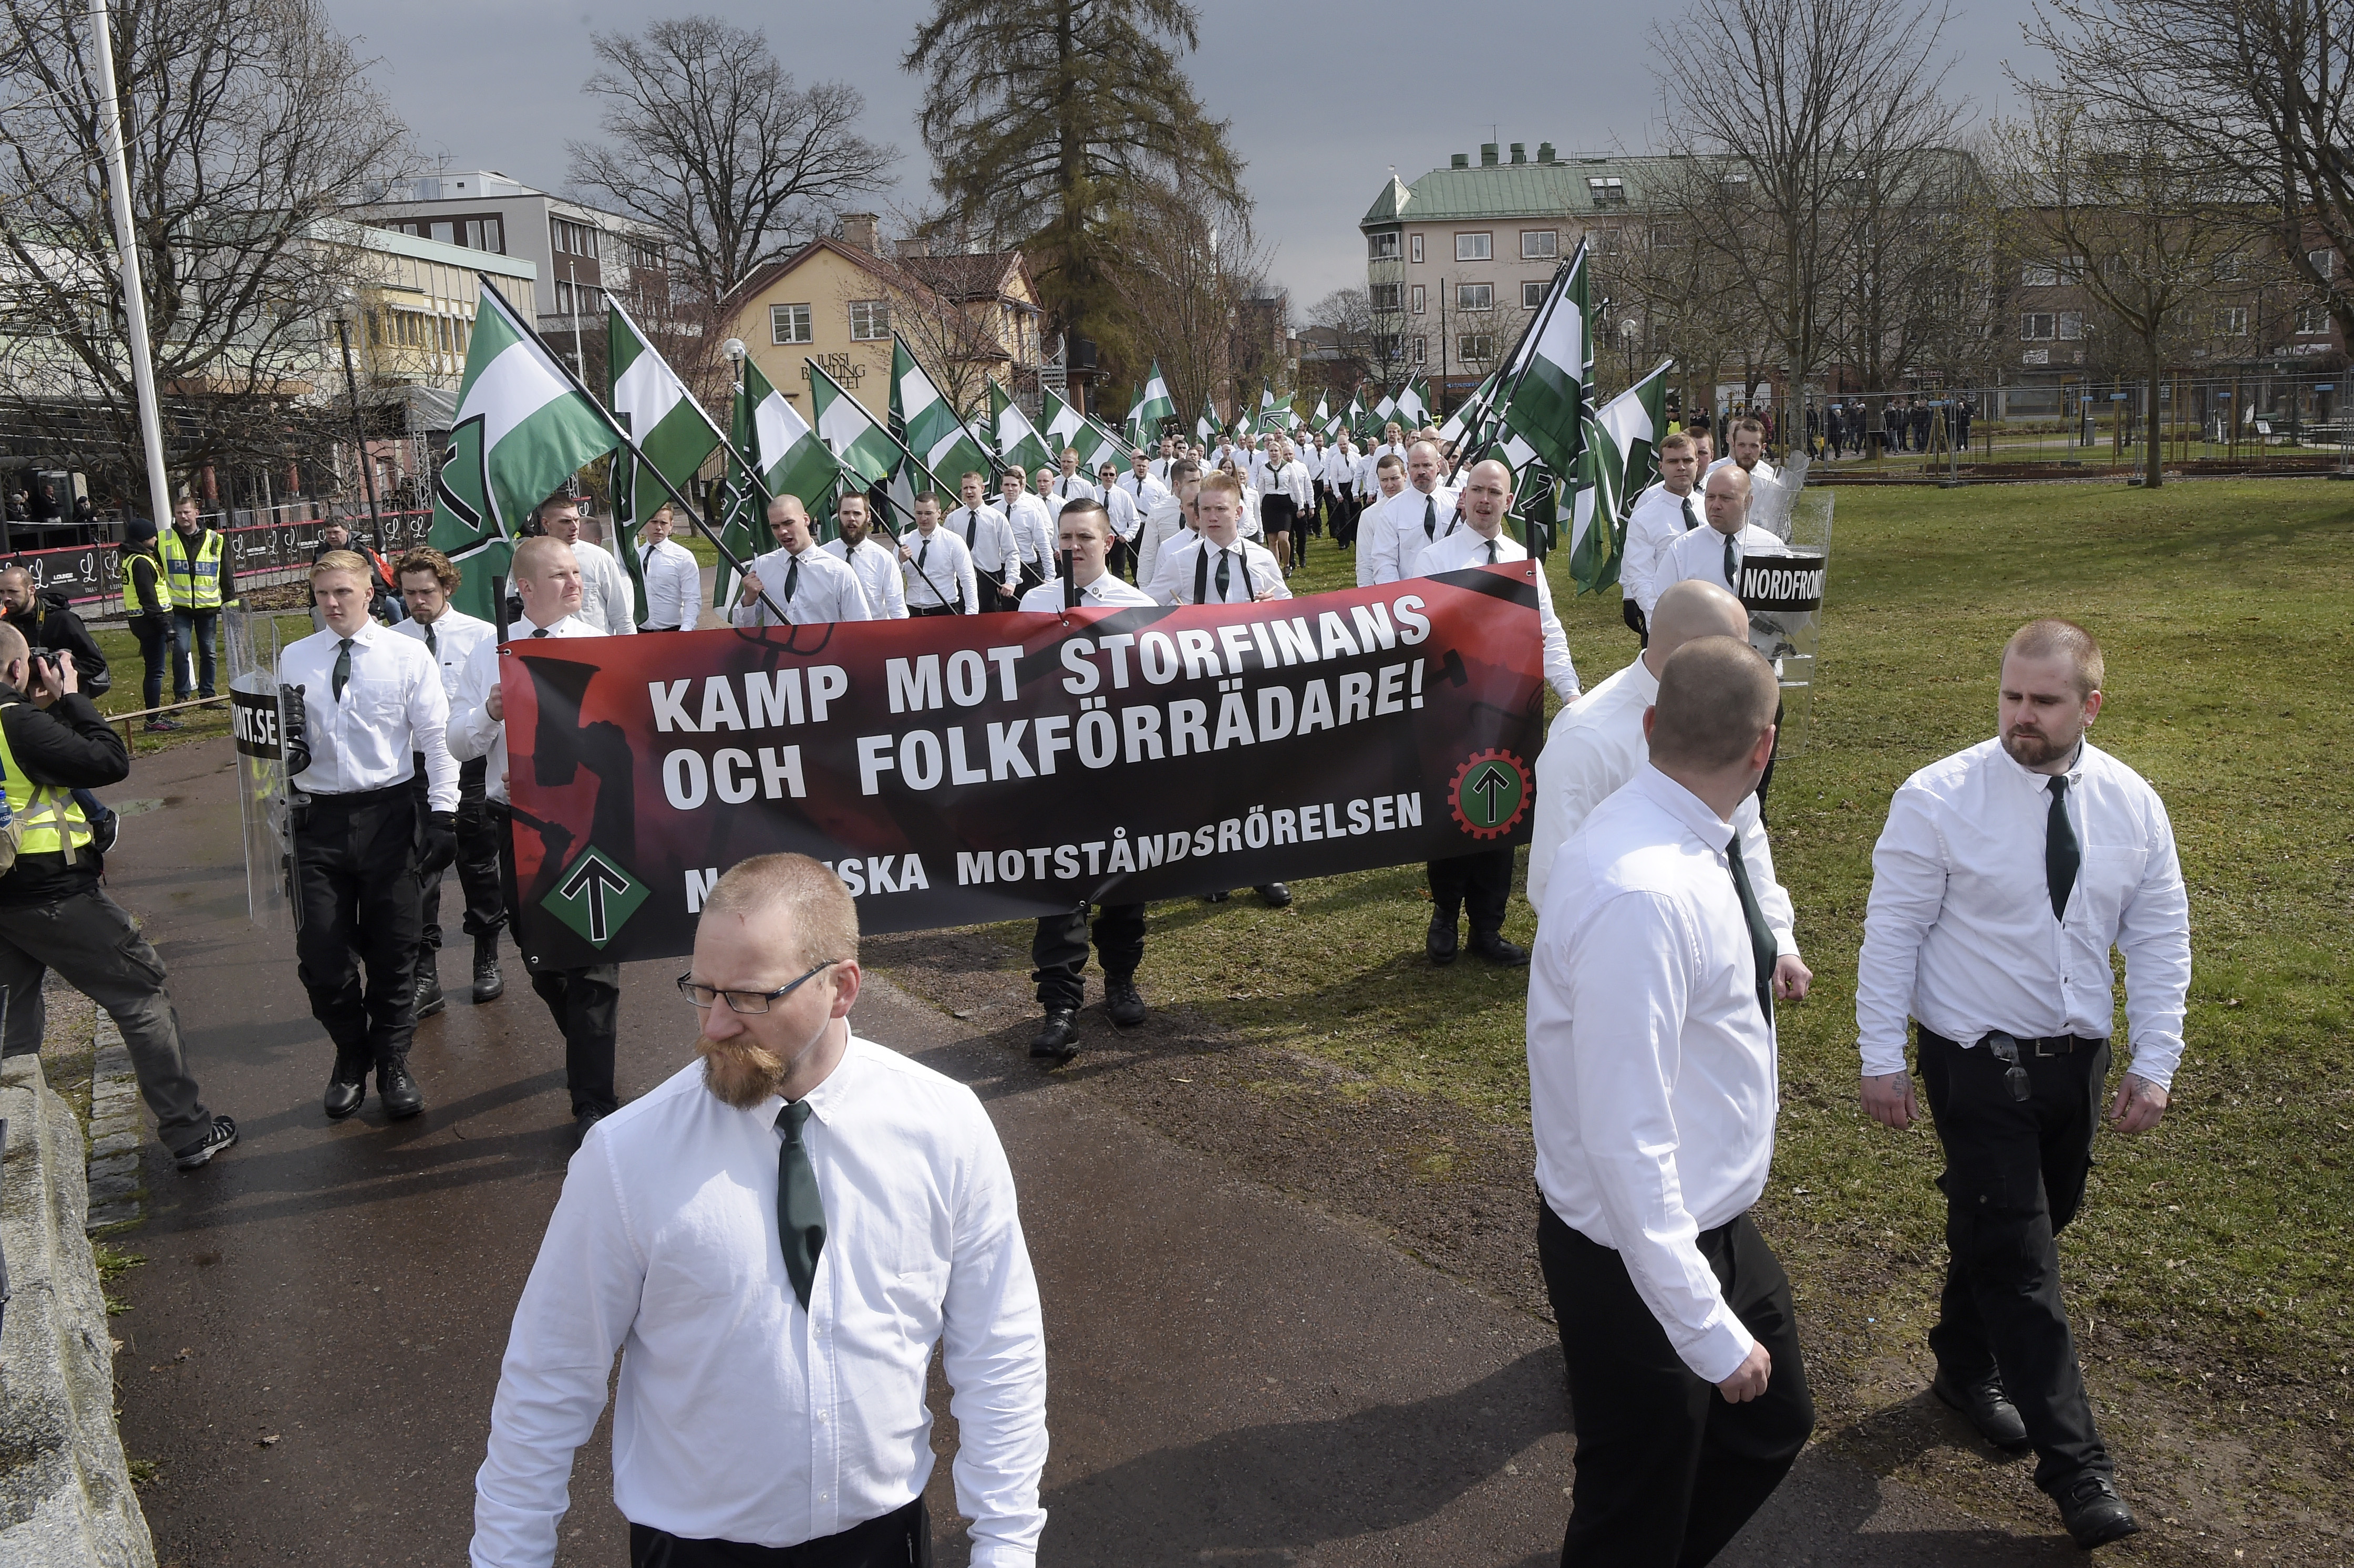 Nordiska motståndsrörelsen är namnet på nazistorganisationen som tågade i Borlänge.